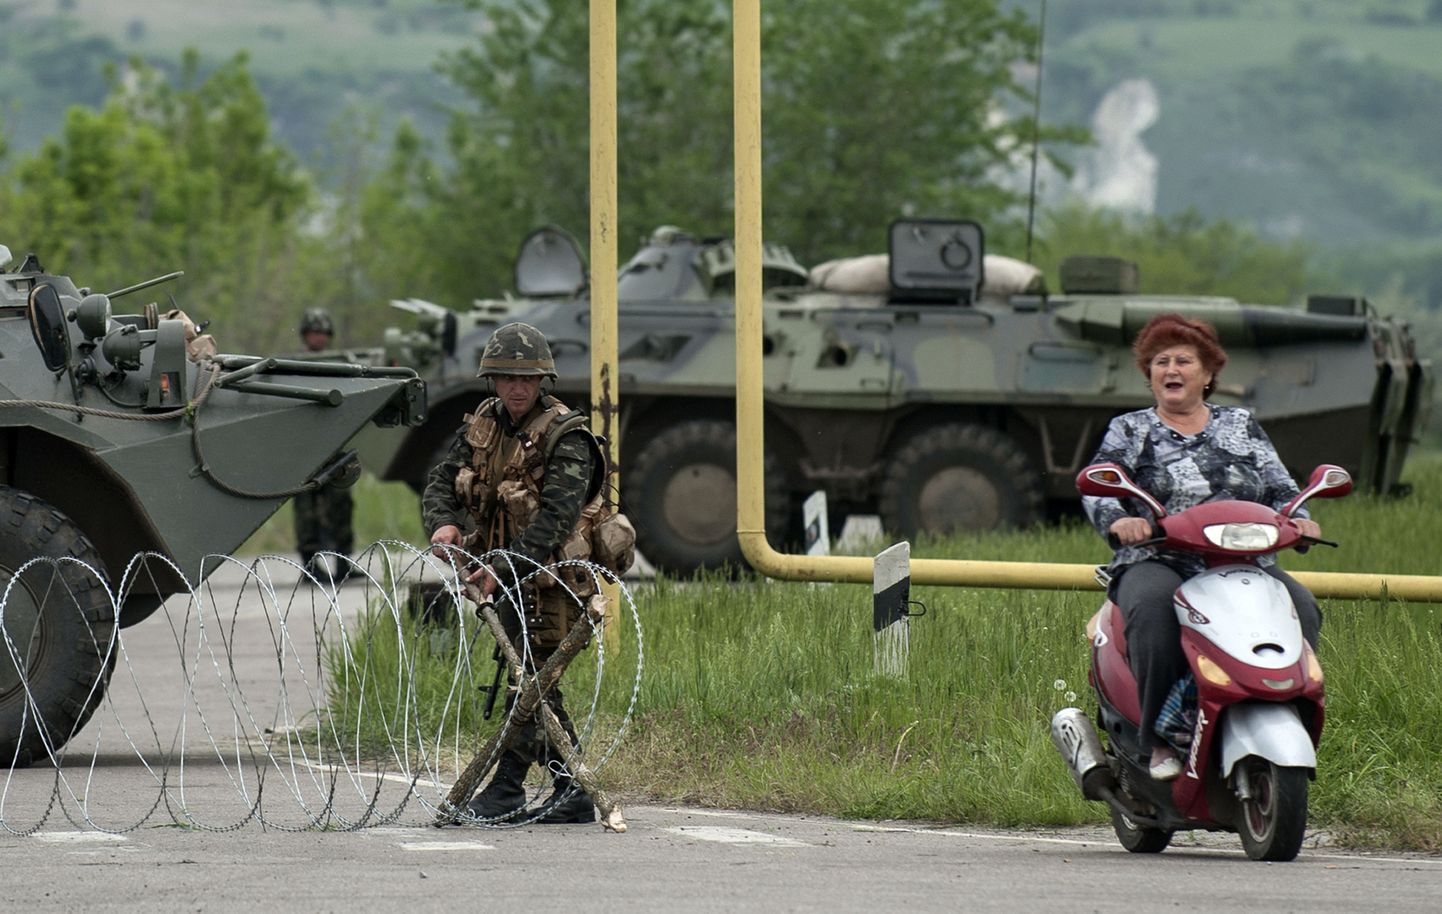 Naine rolleril möödumas Ukraina sõjaväelaste piiripunktist Spivakovka küla lähistel.